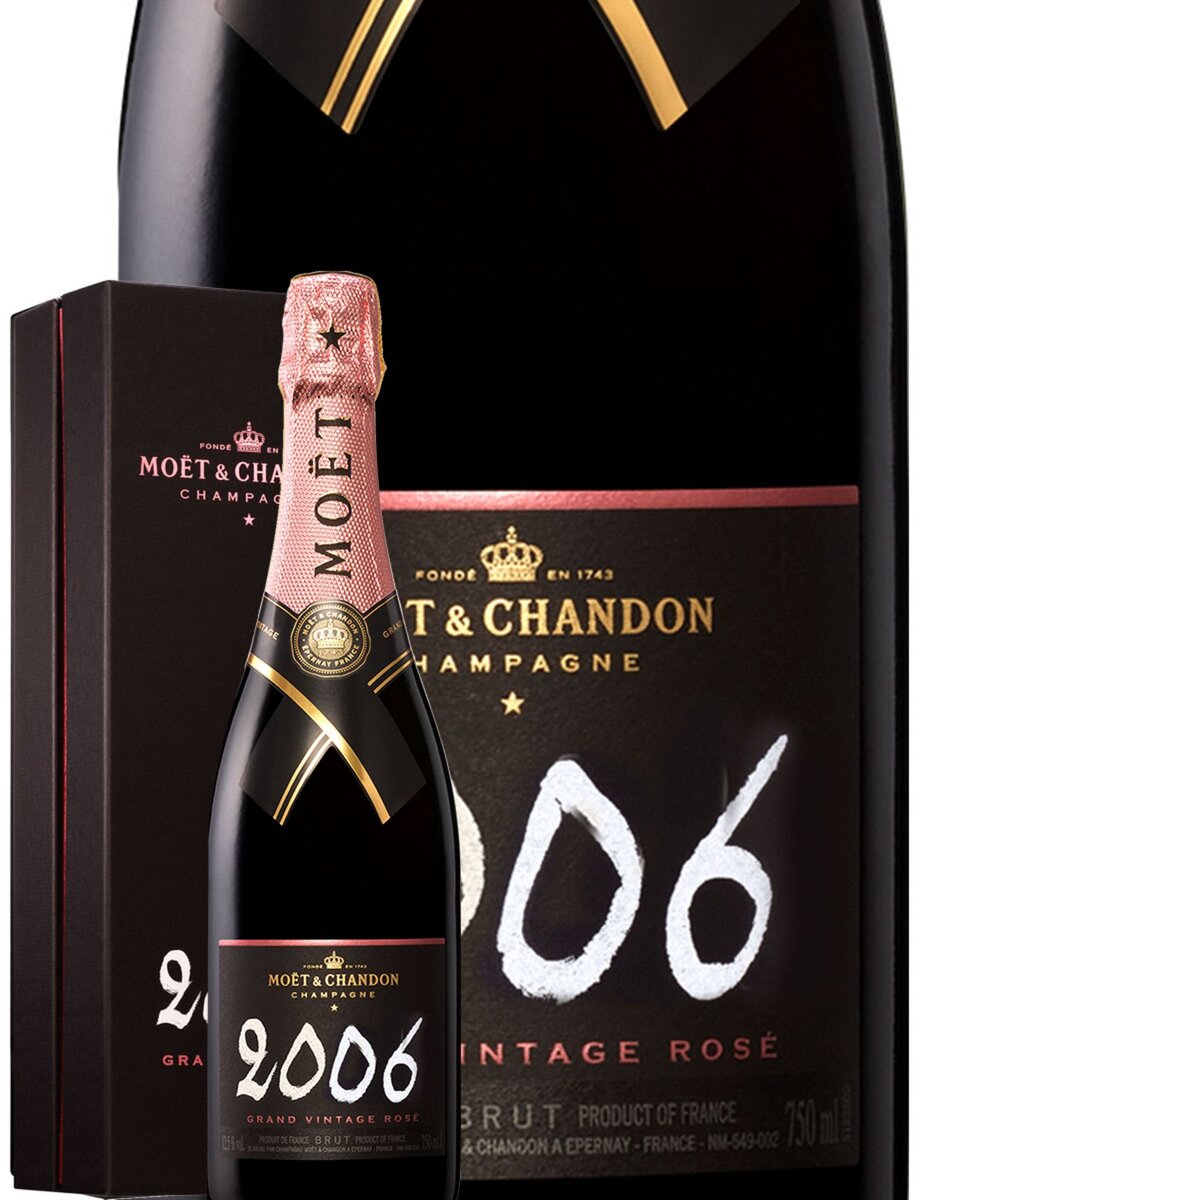 Moët et Chandon Champagne Moët & Chandon Grand Vintage Rose 2006